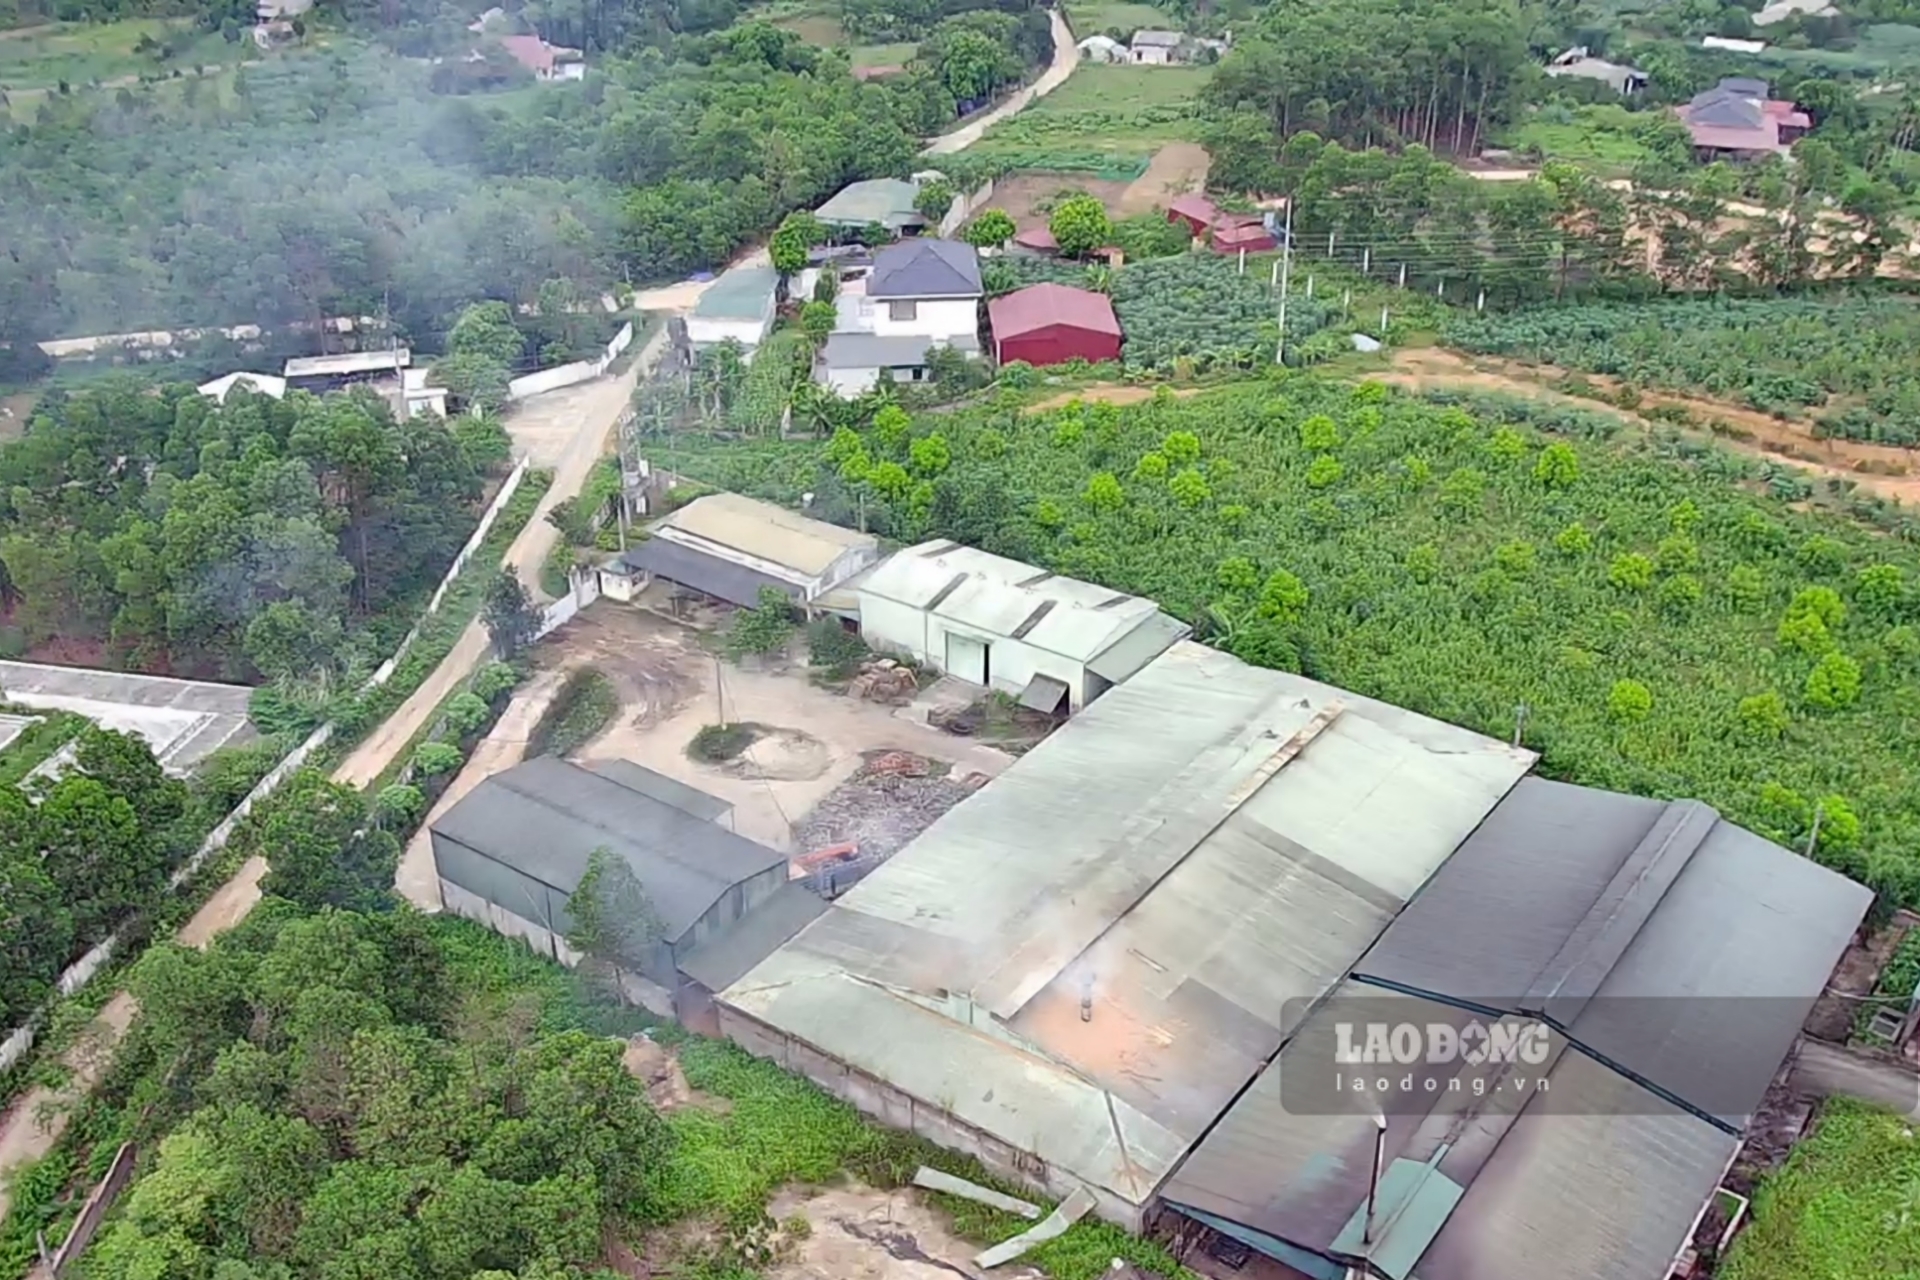 Công ty sản xuất than sinh học xuất khẩu tại khu Suông 2, xã Hương Lung xả khói trắng màu khét khiến các khu dân cư bị ảnh hưởng. Ảnh: Tô Công.